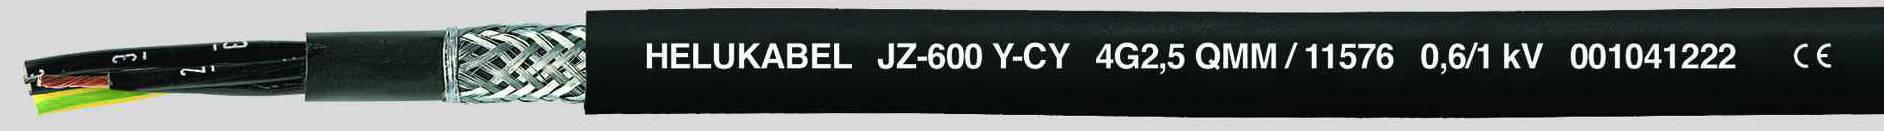 HELUKABEL JZ-600-Y-CY Steuerleitung 7 G 1 mm² Schwarz 11521-500 500 m